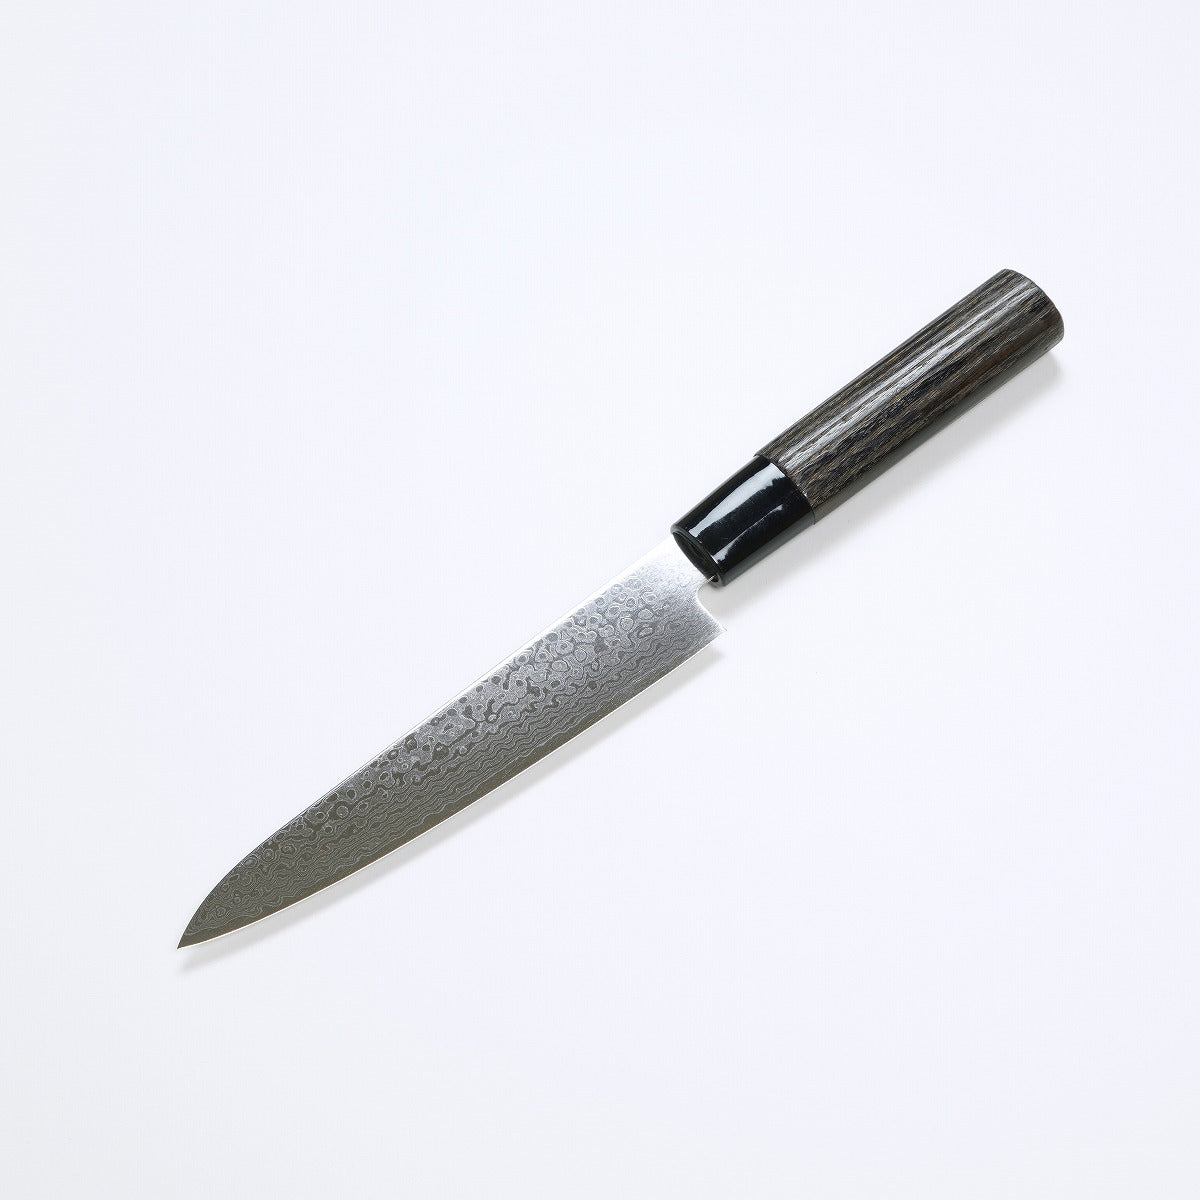 生果刀 (功能刀) ZA18不鏽鋼+ 墨流模樣, 150mm